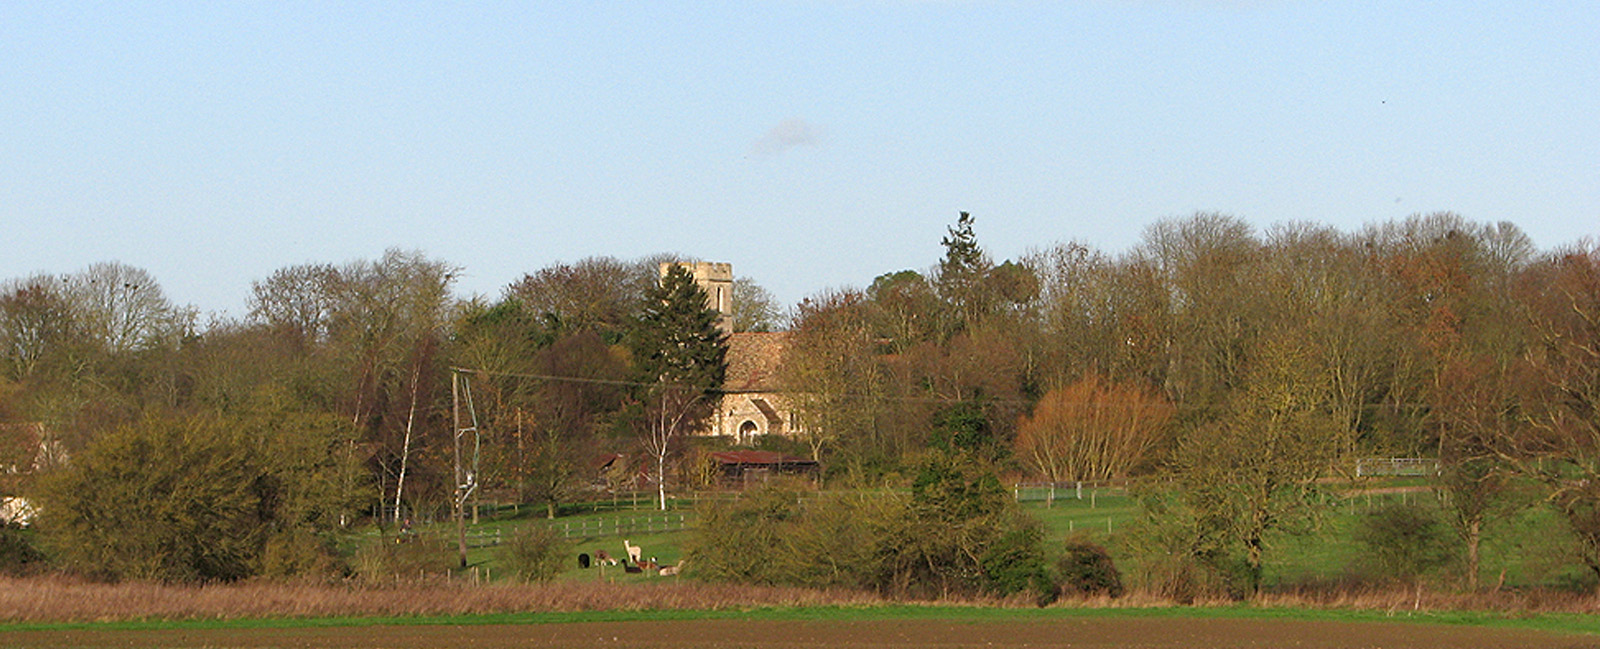 Towards Bourn Brook and Caldecote church